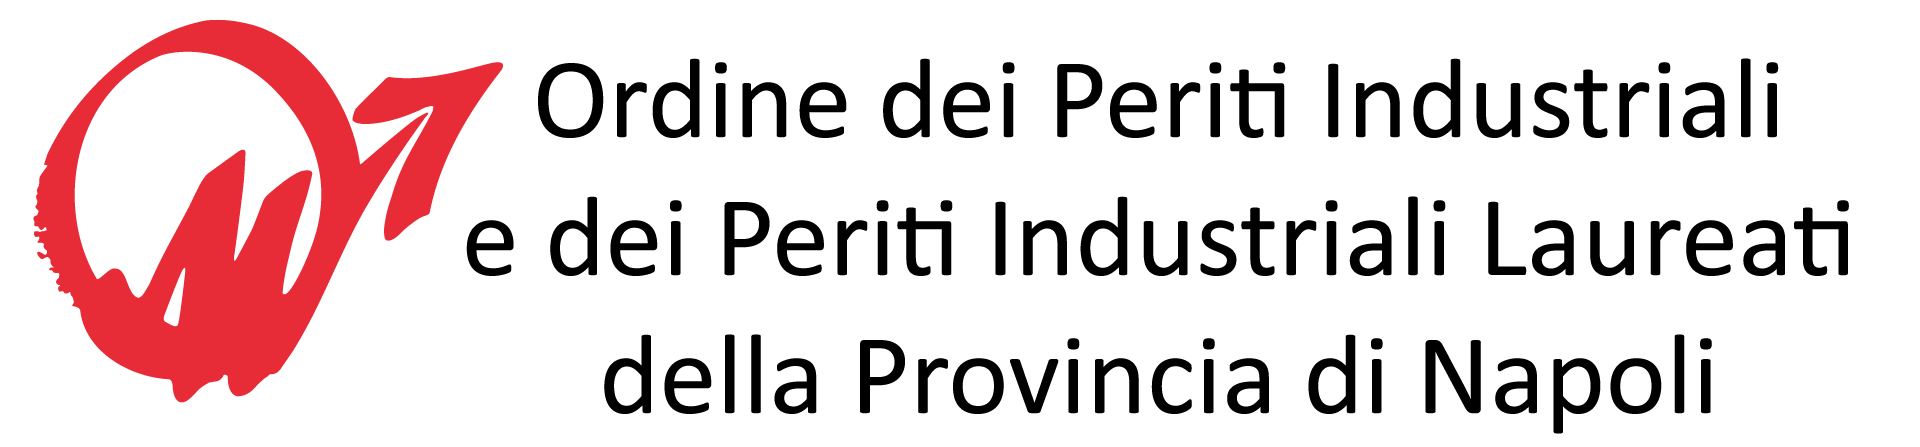 Ordine dei Periti Industriali e dei Periti Industriali Laureati della Provincia di Napoli